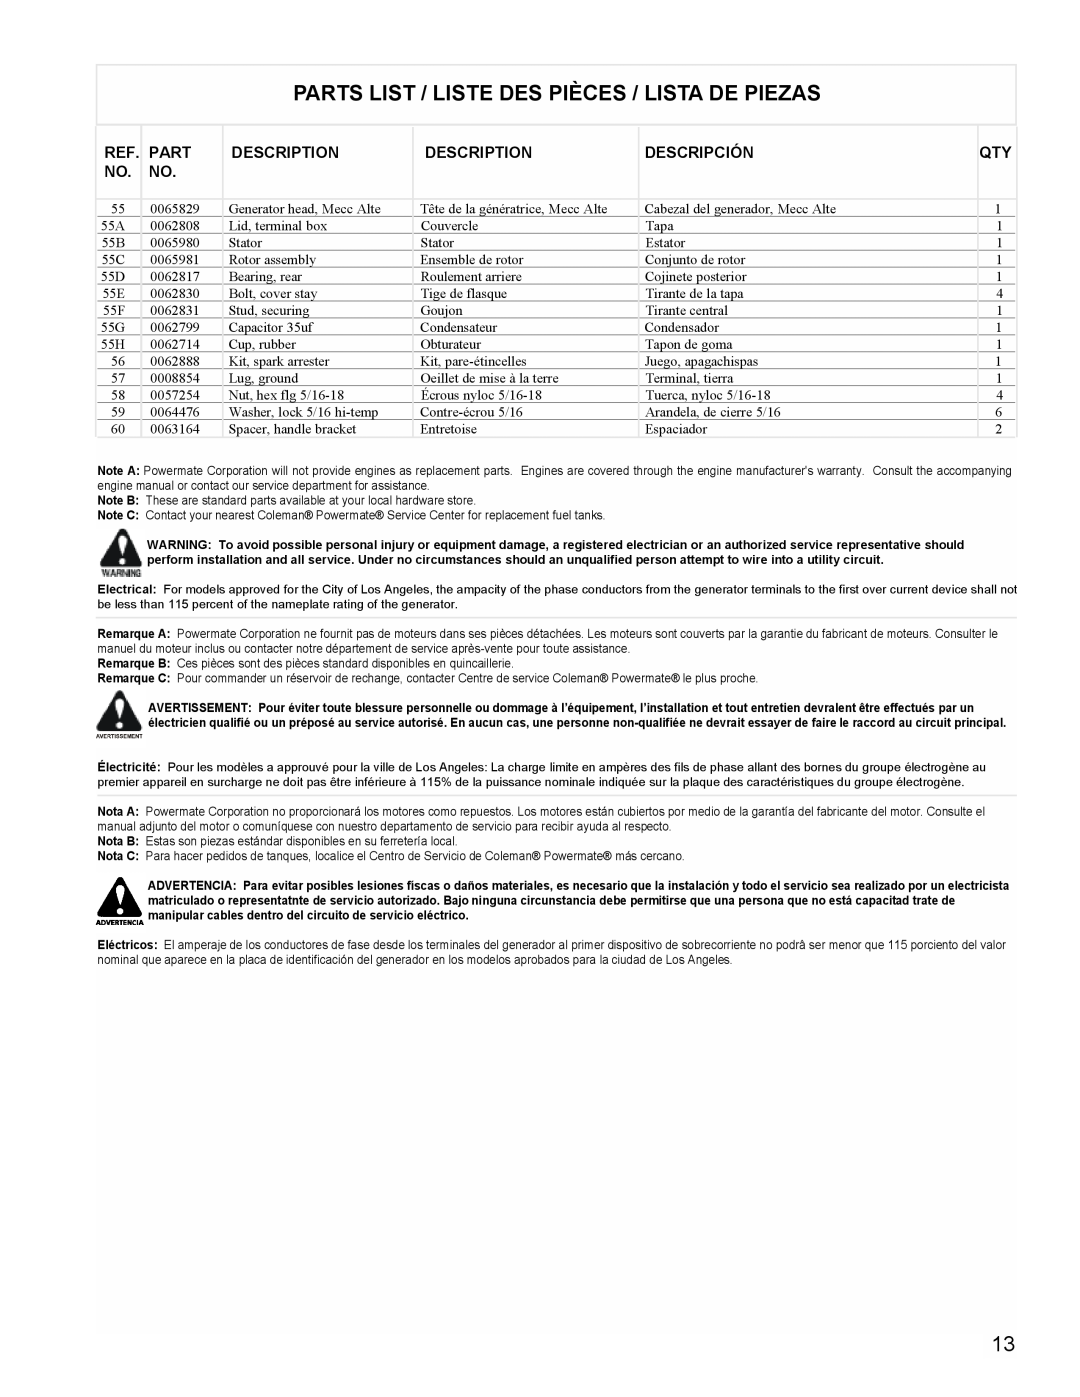 Powermate PMC605000 manual Parts List / Liste Des Pièces / Lista De Piezas, Description, Descripción 